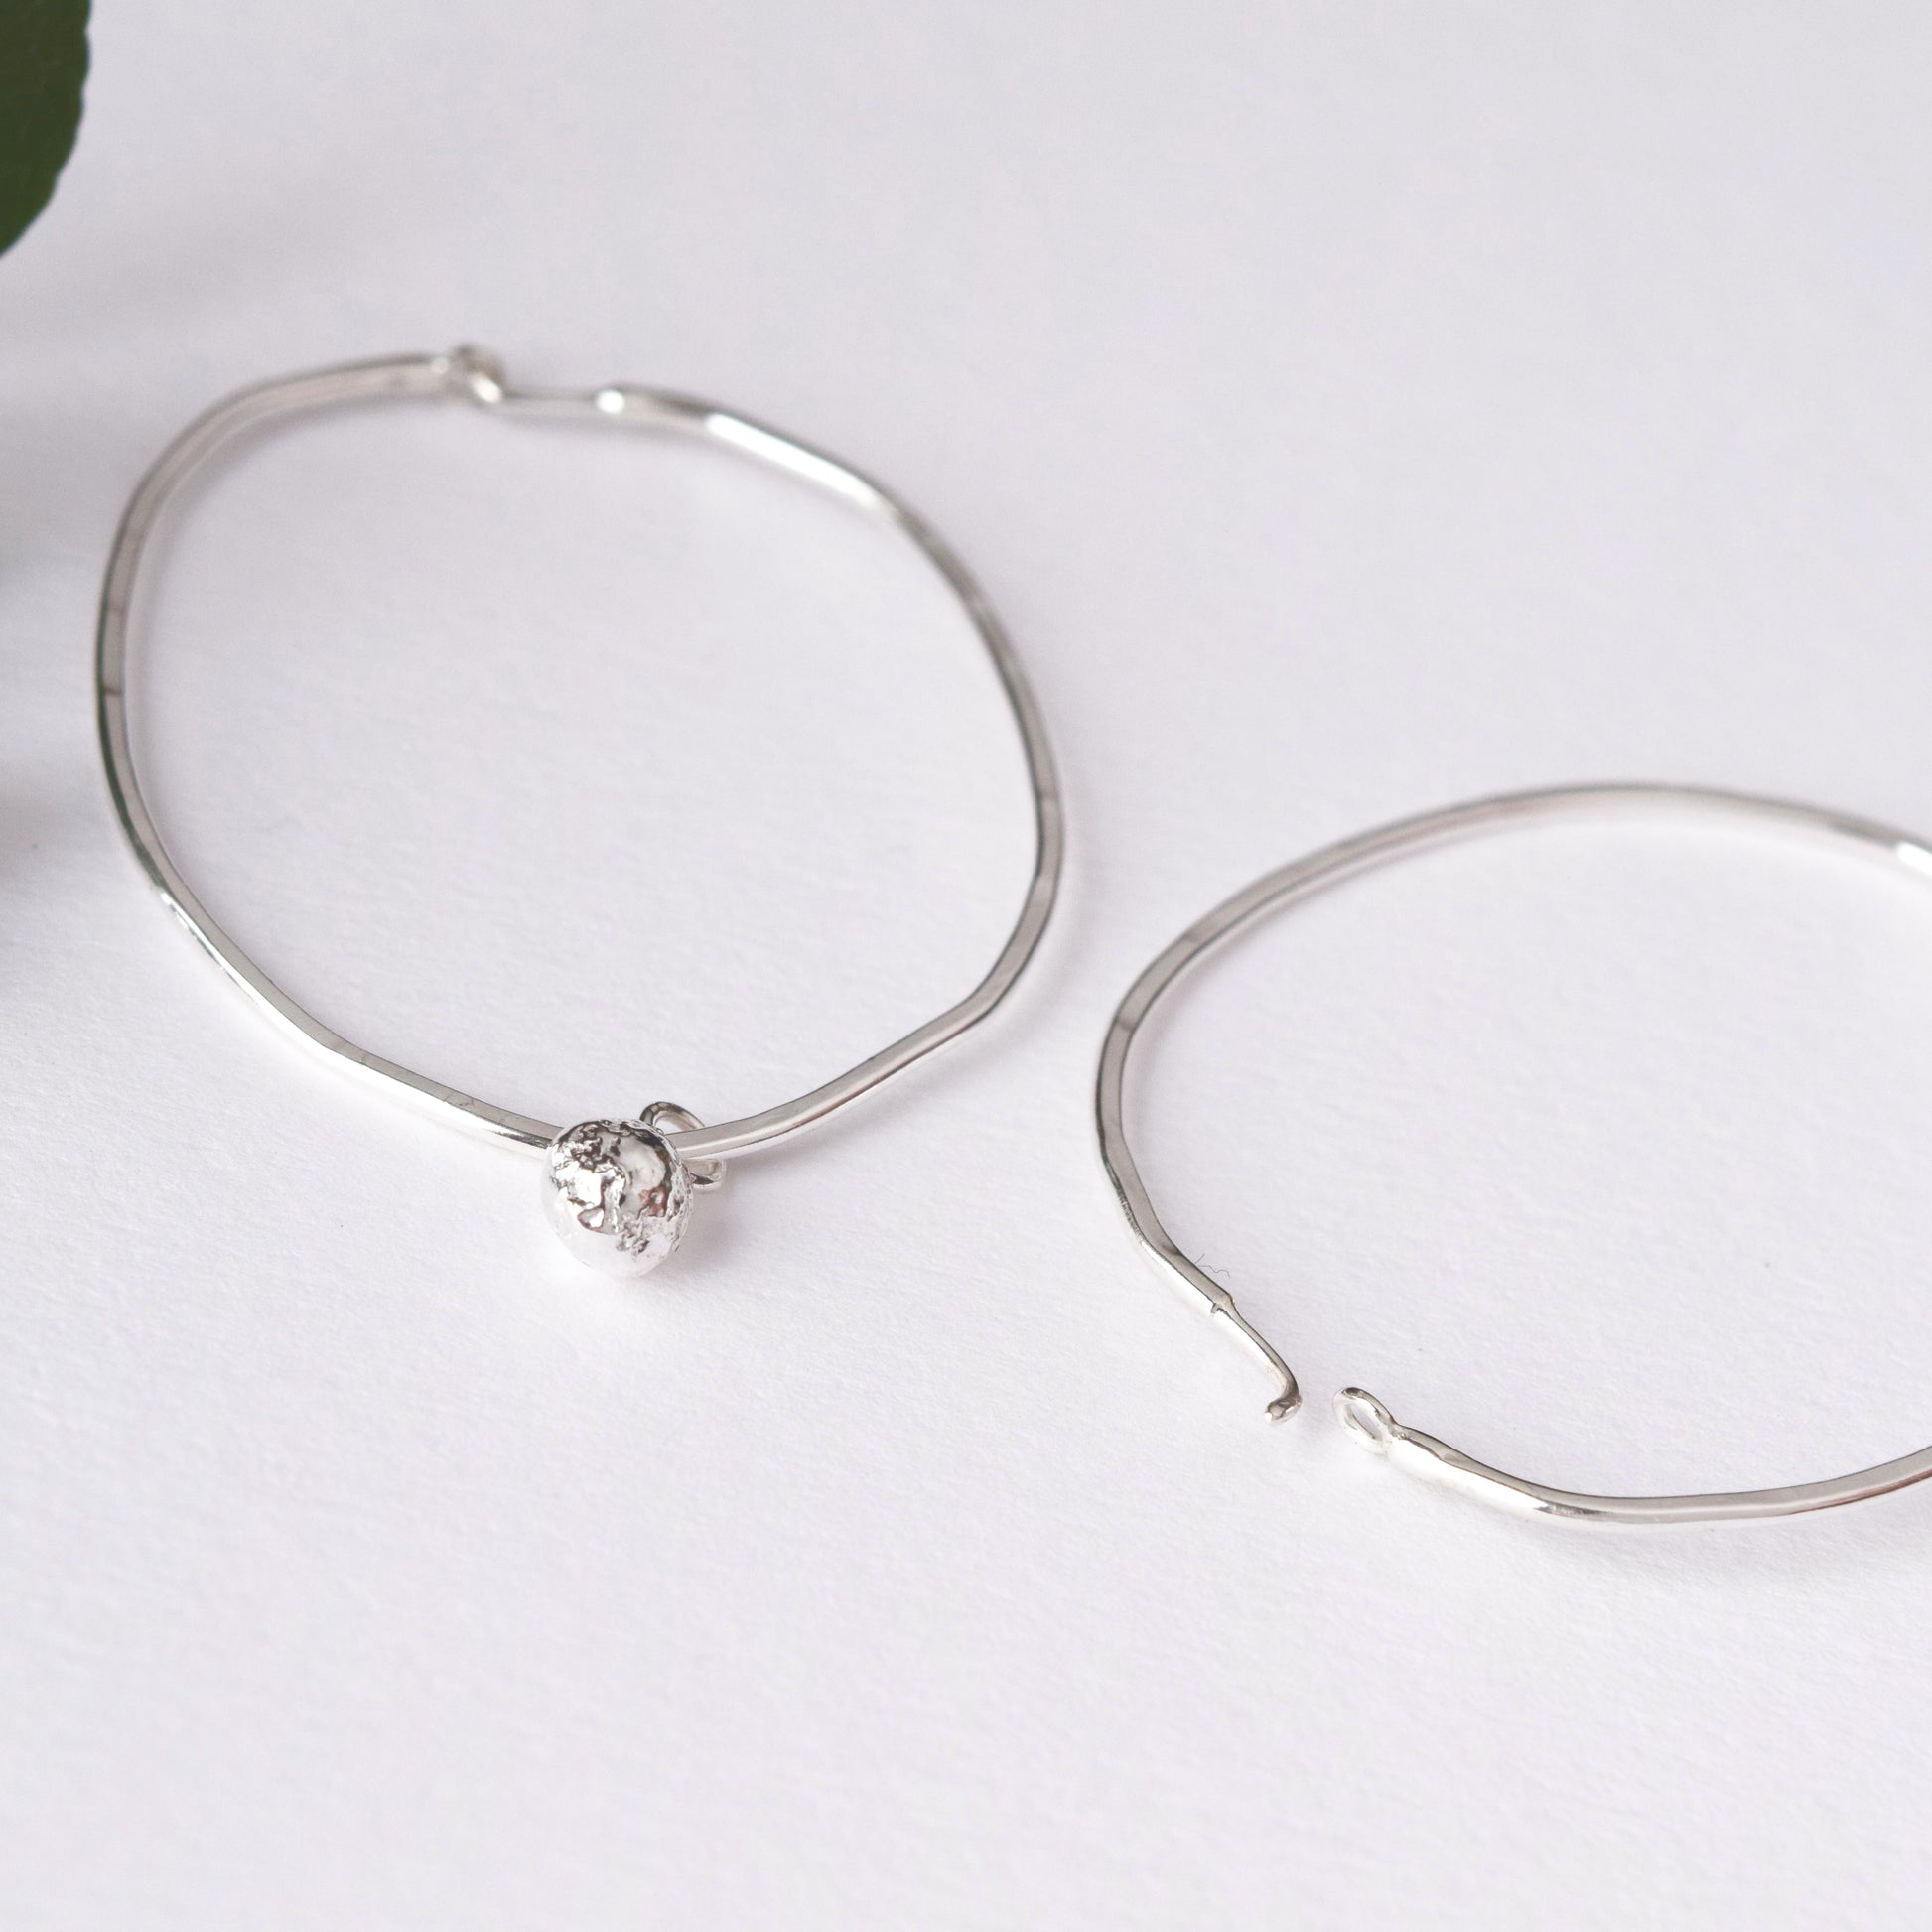 Handmade silver hoop earrings by MUKA studio 